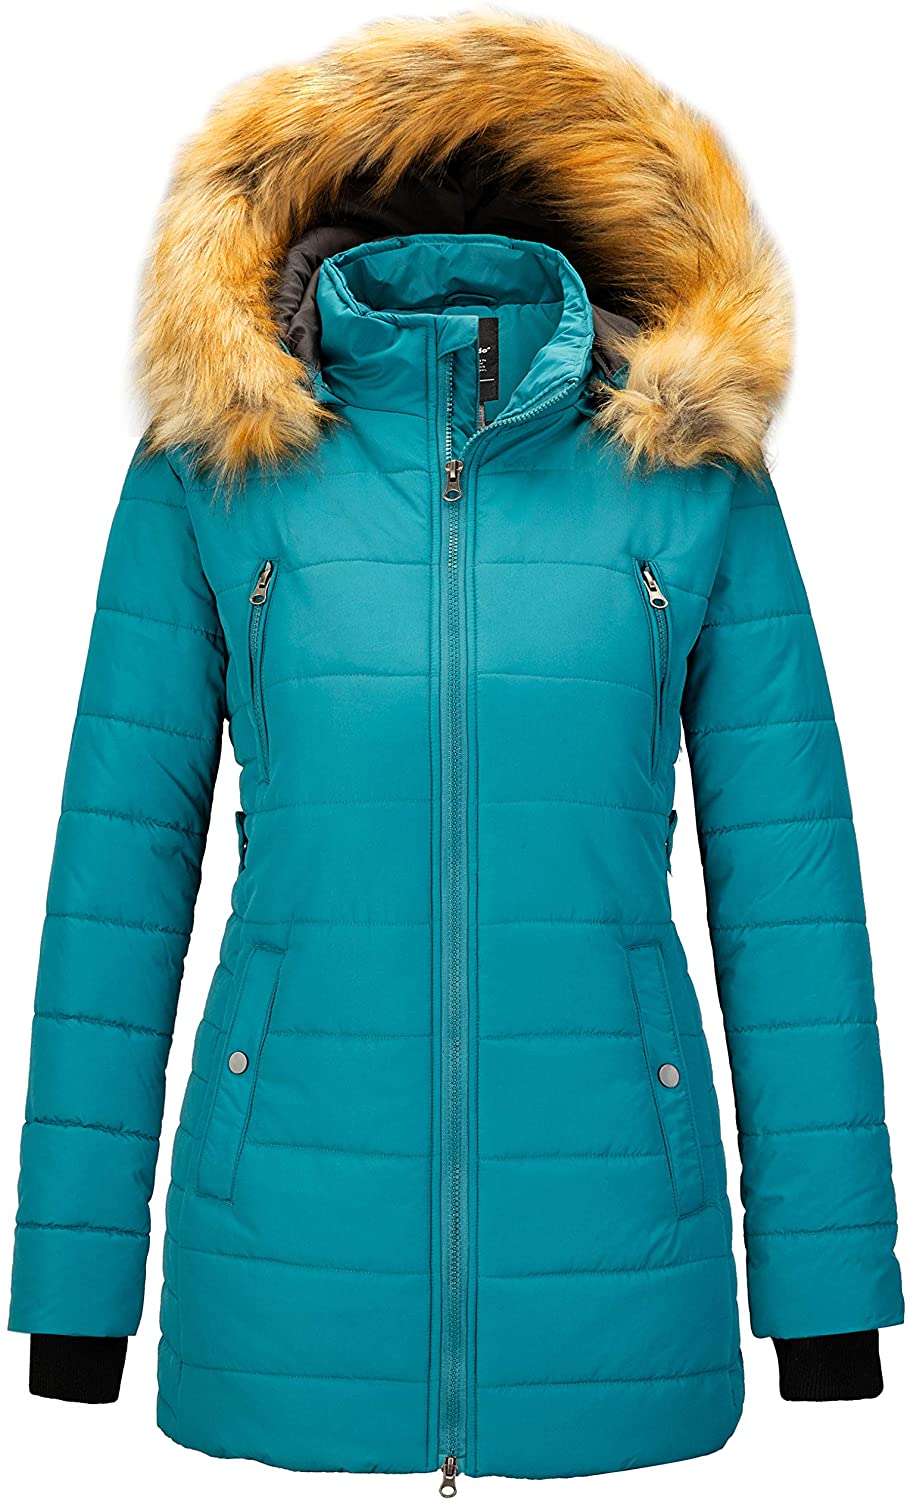 Wantdo Womens Winter Coat Warm Hooded Puffer Jacket